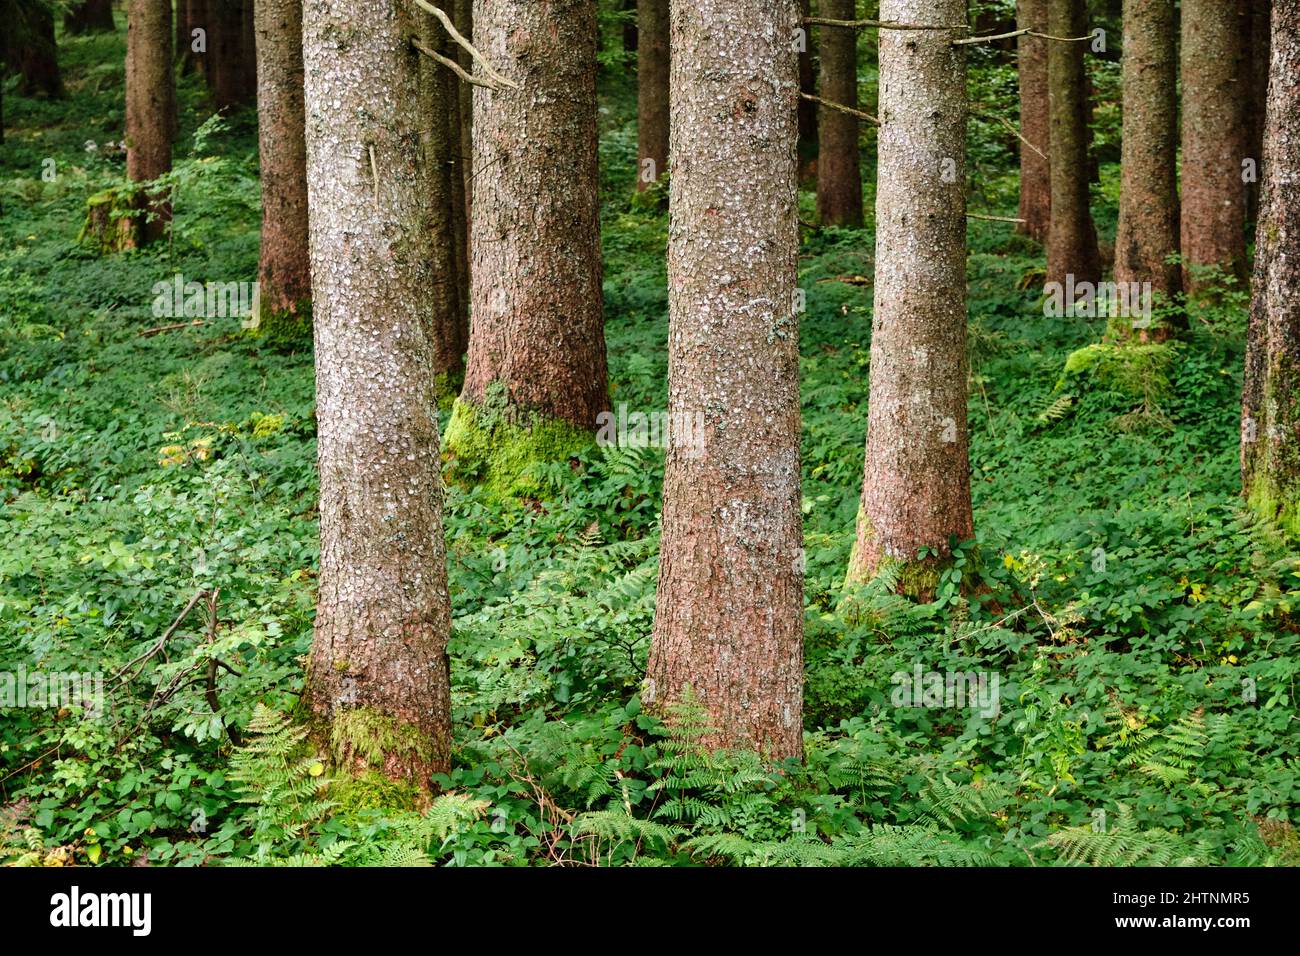 Baumstämme in einem Wald mit grüner Vegetation auf dem Boden Stockfoto